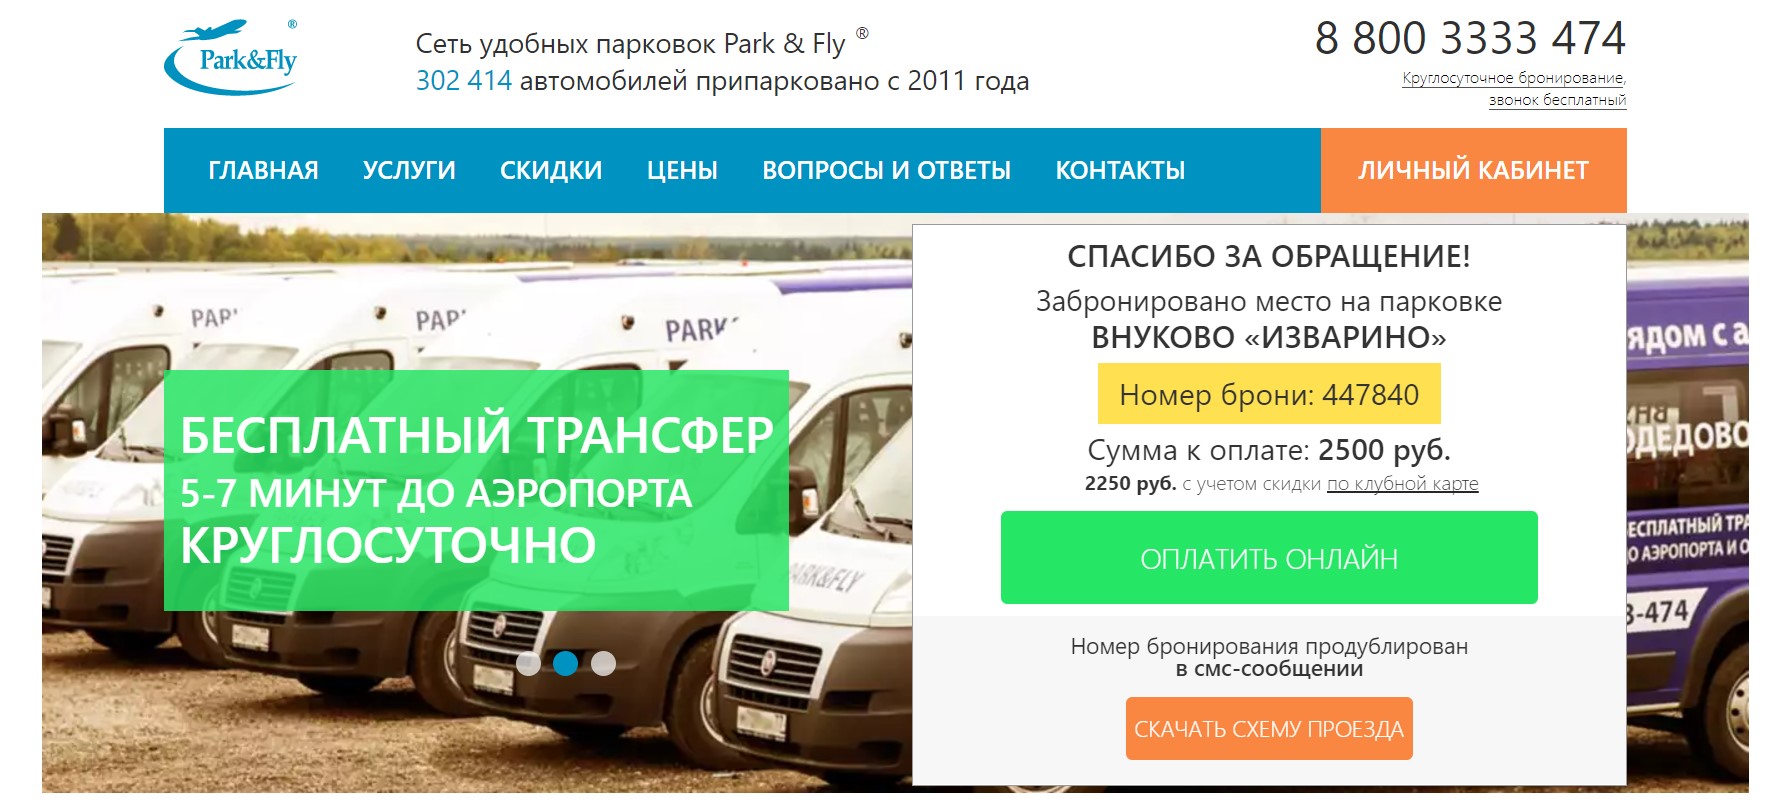 Паркинг park and fly в аэропортах москвы. бесплатный трансфер и упаковка багажа